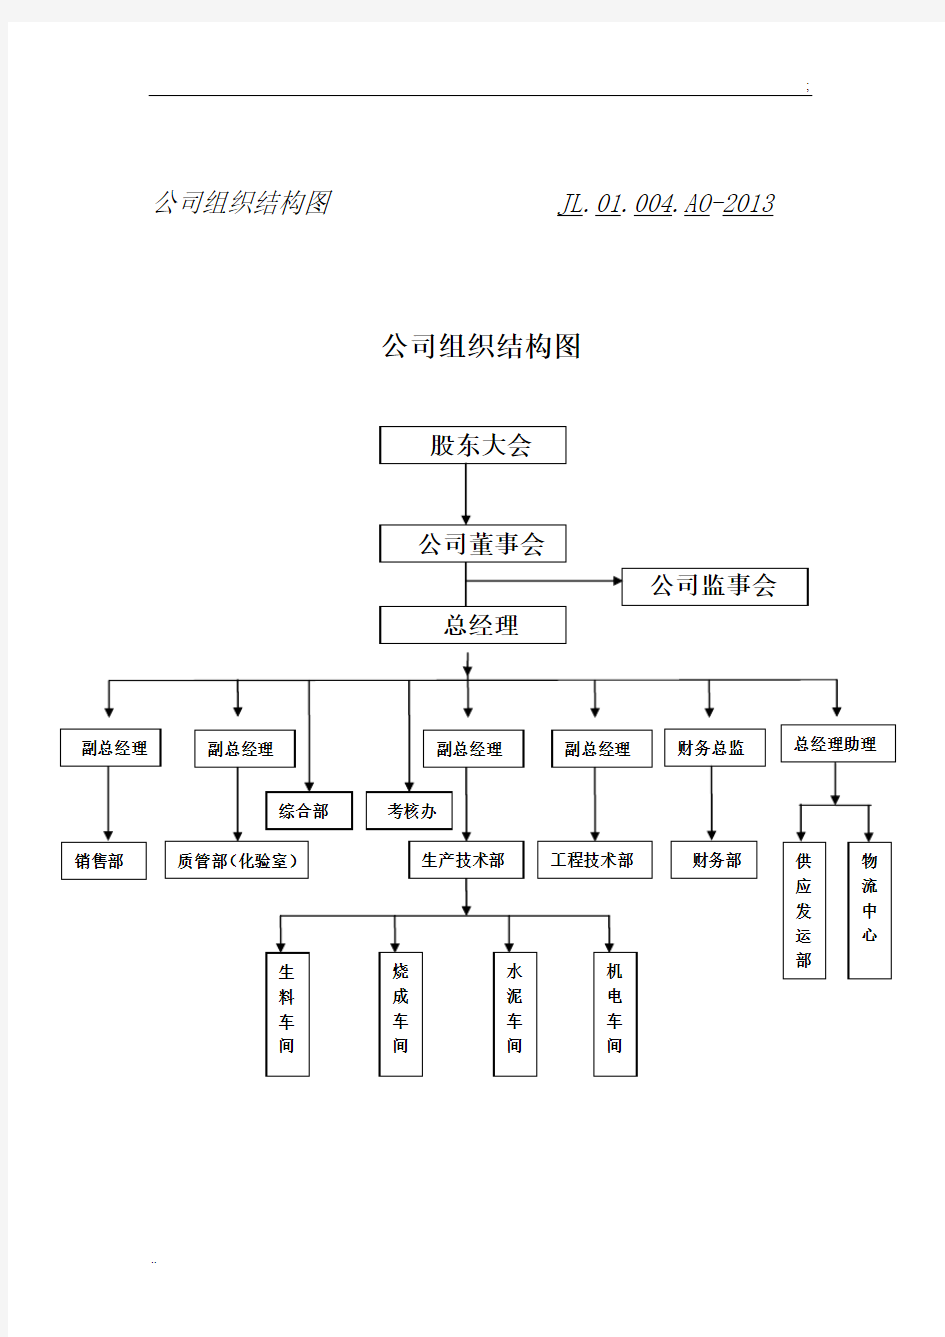 公司组织结构图 (3)